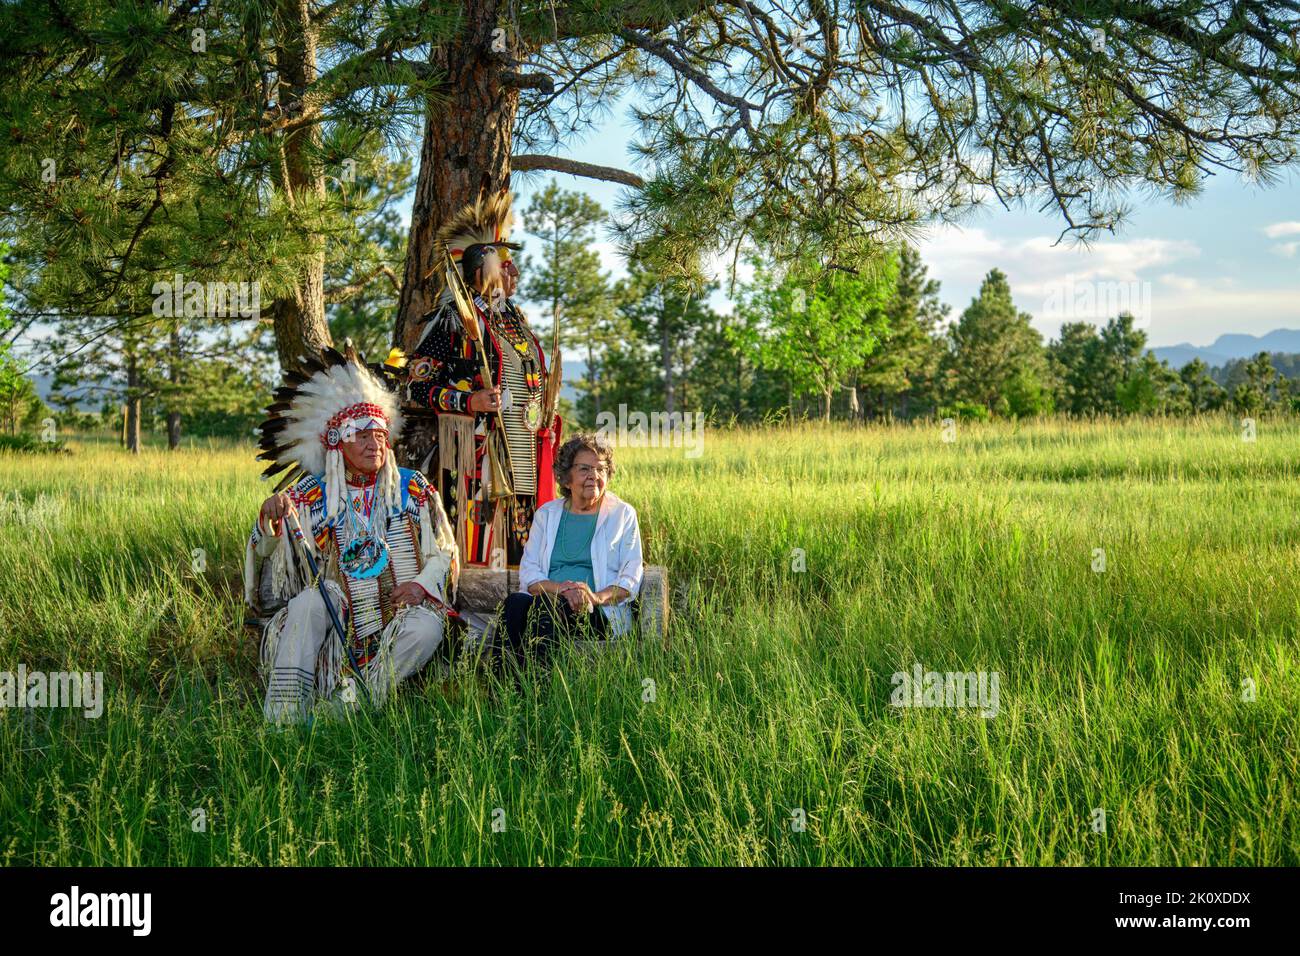 États-Unis, Dakota du Sud, Black Hills, Jerry, Yellowhawk avec son épouse Johanna et son fils Jim Yellowhawk (Lakota) Banque D'Images